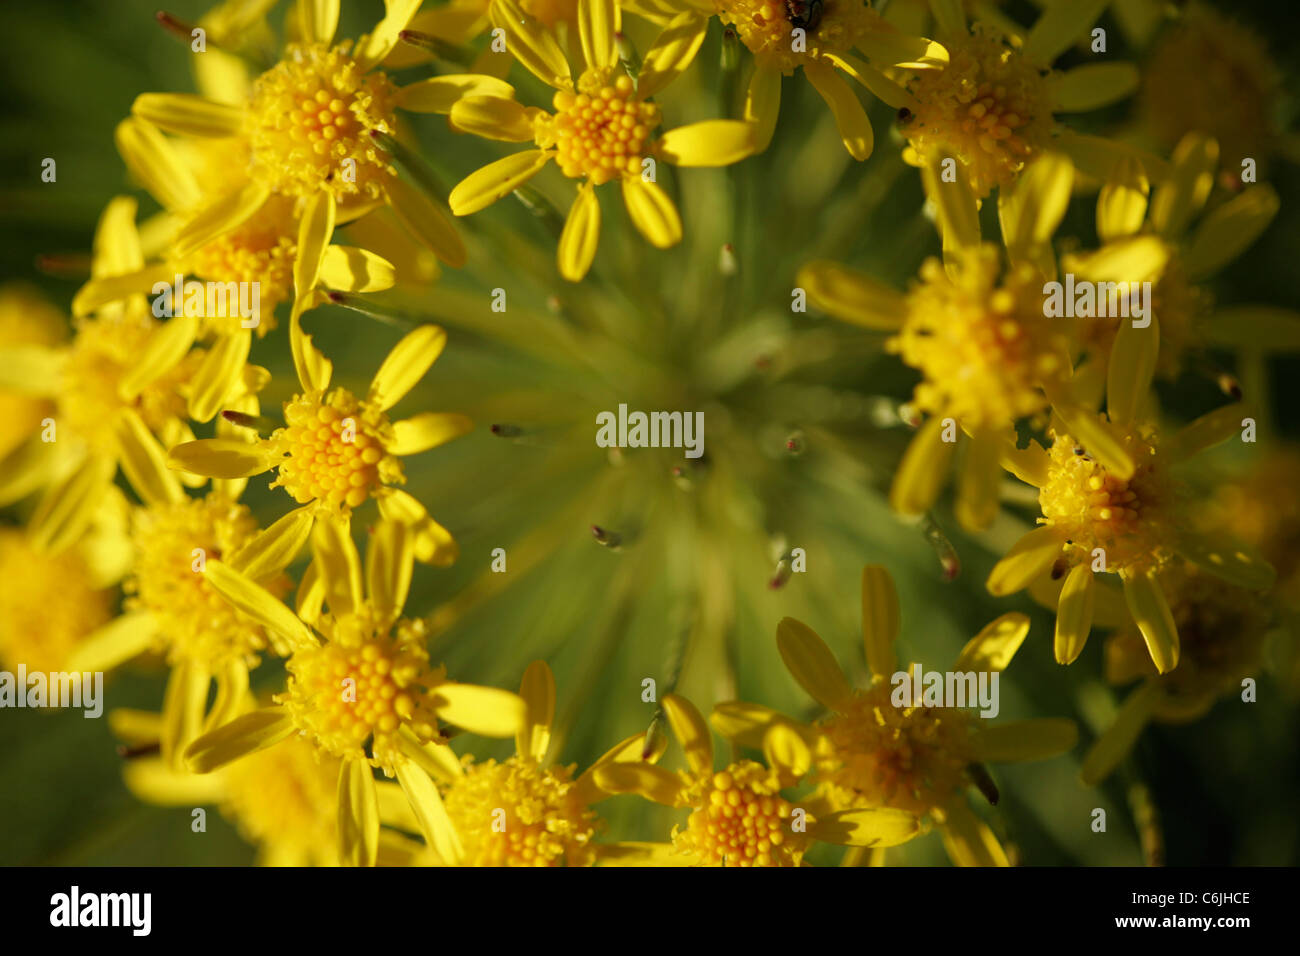 Los pétalos de la flor compuesto amarillo indígenas Foto de stock